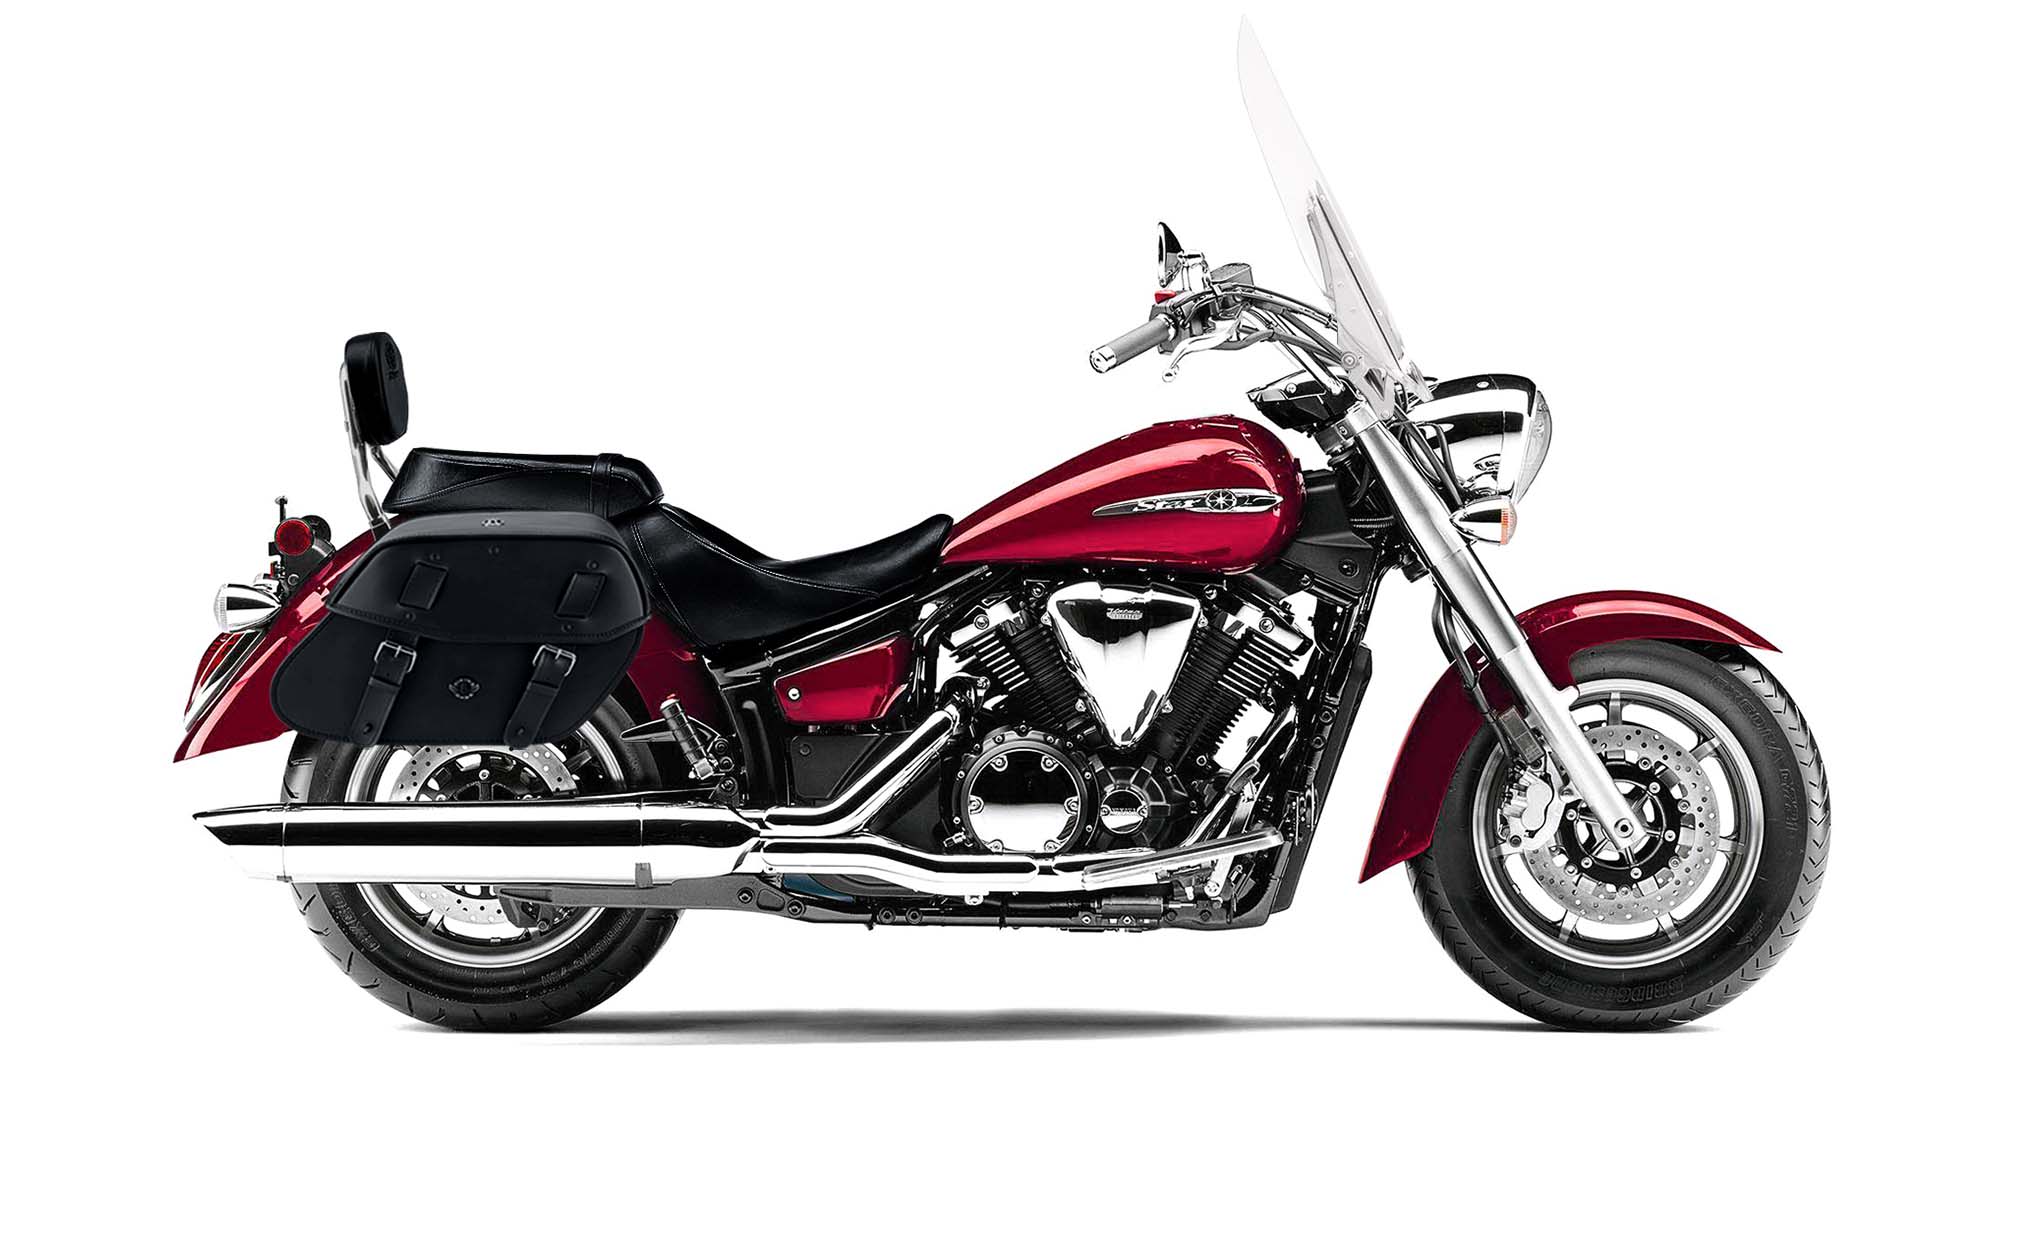 Viking Odin Large Yamaha V Star 1300 Tourer Leather Motorcycle Saddlebags on Bike Photo @expand